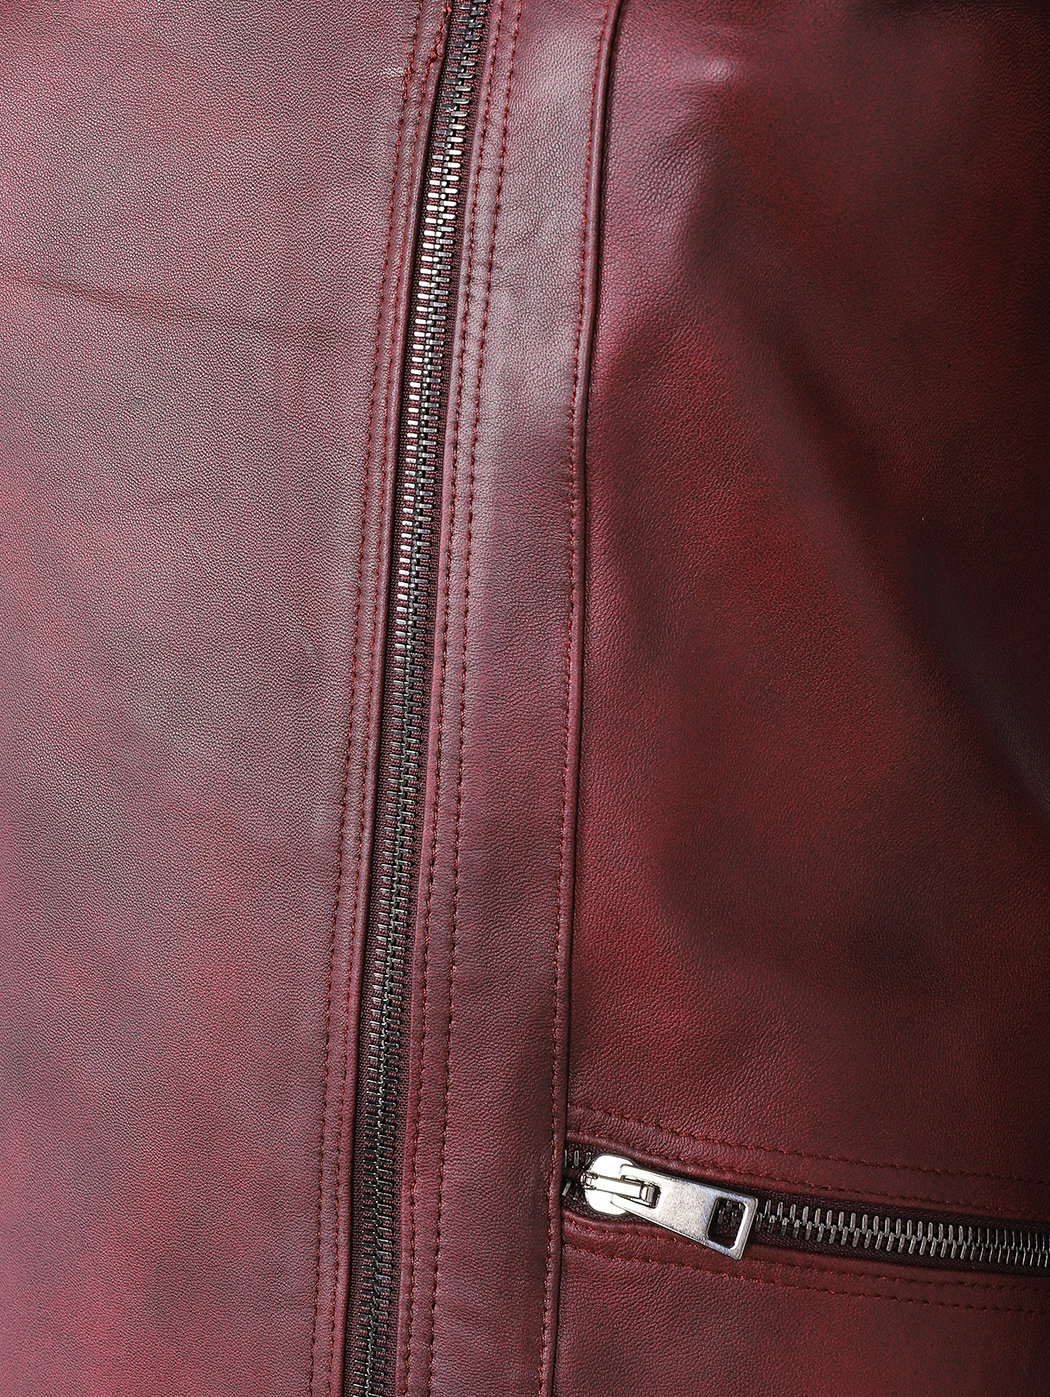 Кожаная куртка косуха коричневая красный